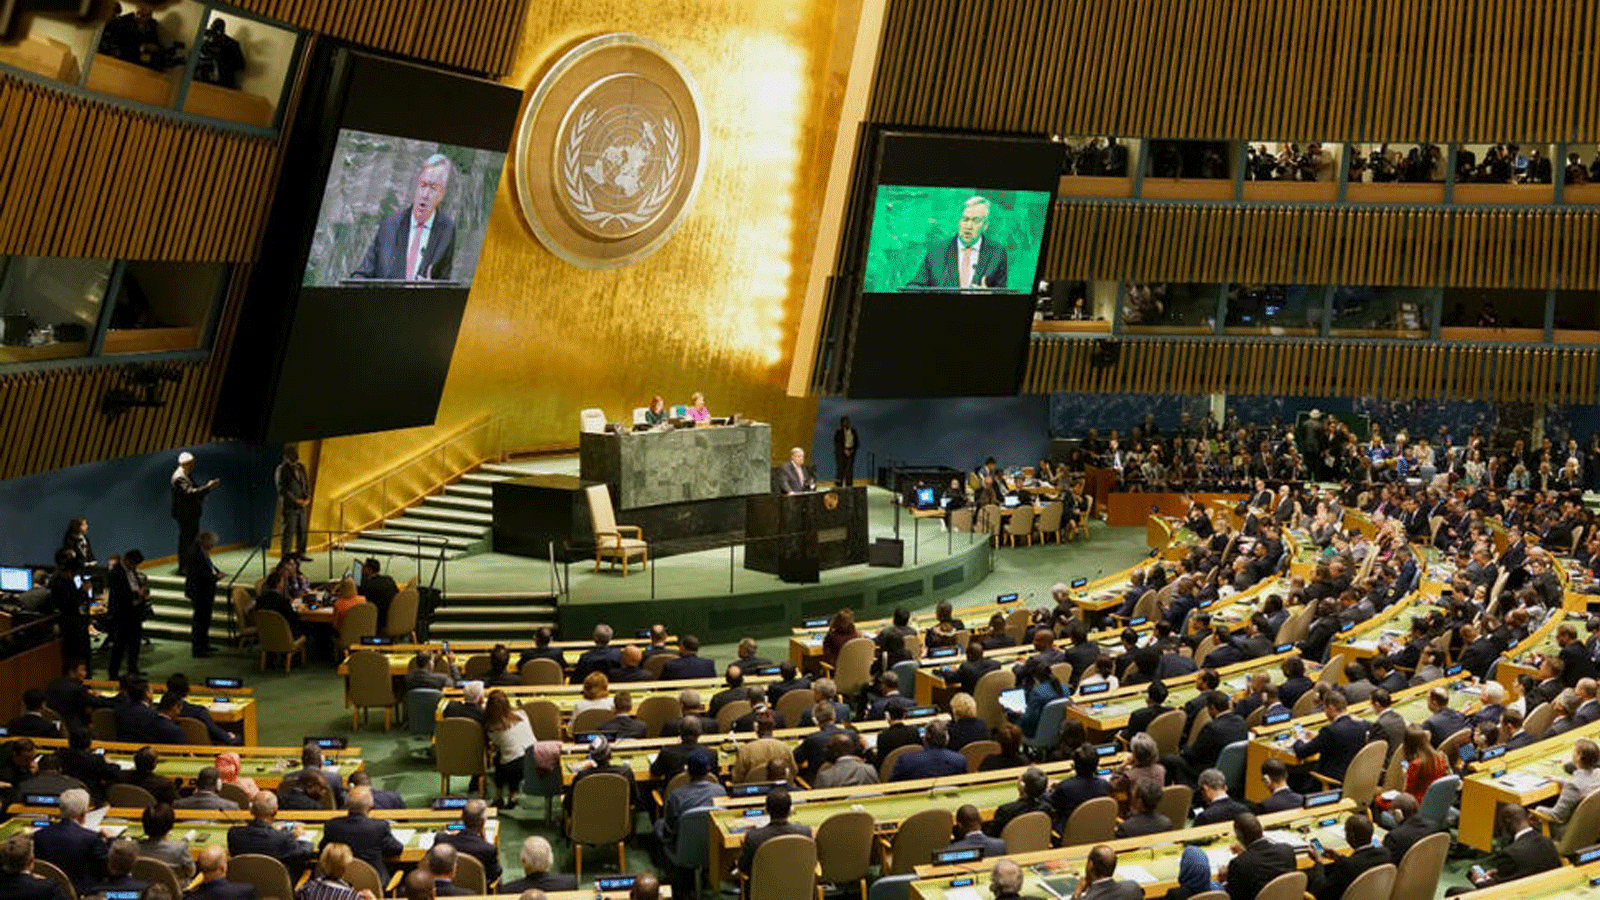 الأمين العام للأمم المتحدة أنطونيو غوتيريش يتحدث في مقر الأمم المتحدة/ نيويورك. 2 أبريل/ نيسان 2020